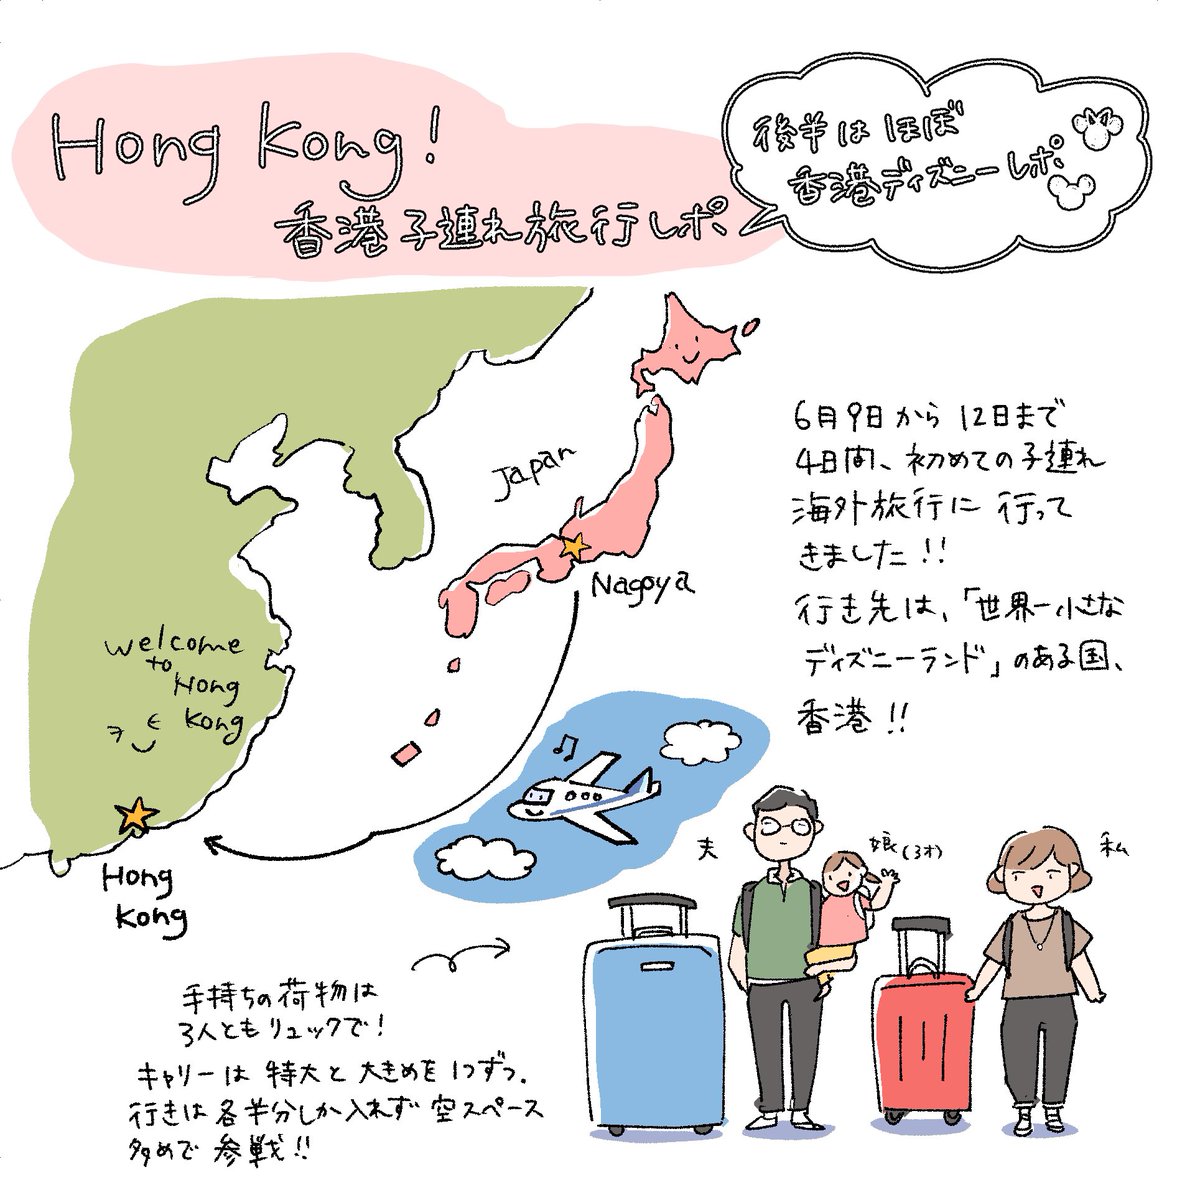 日本漫畫家來港旅行 插圖記錄行程提及香港加油 / 日本在香港